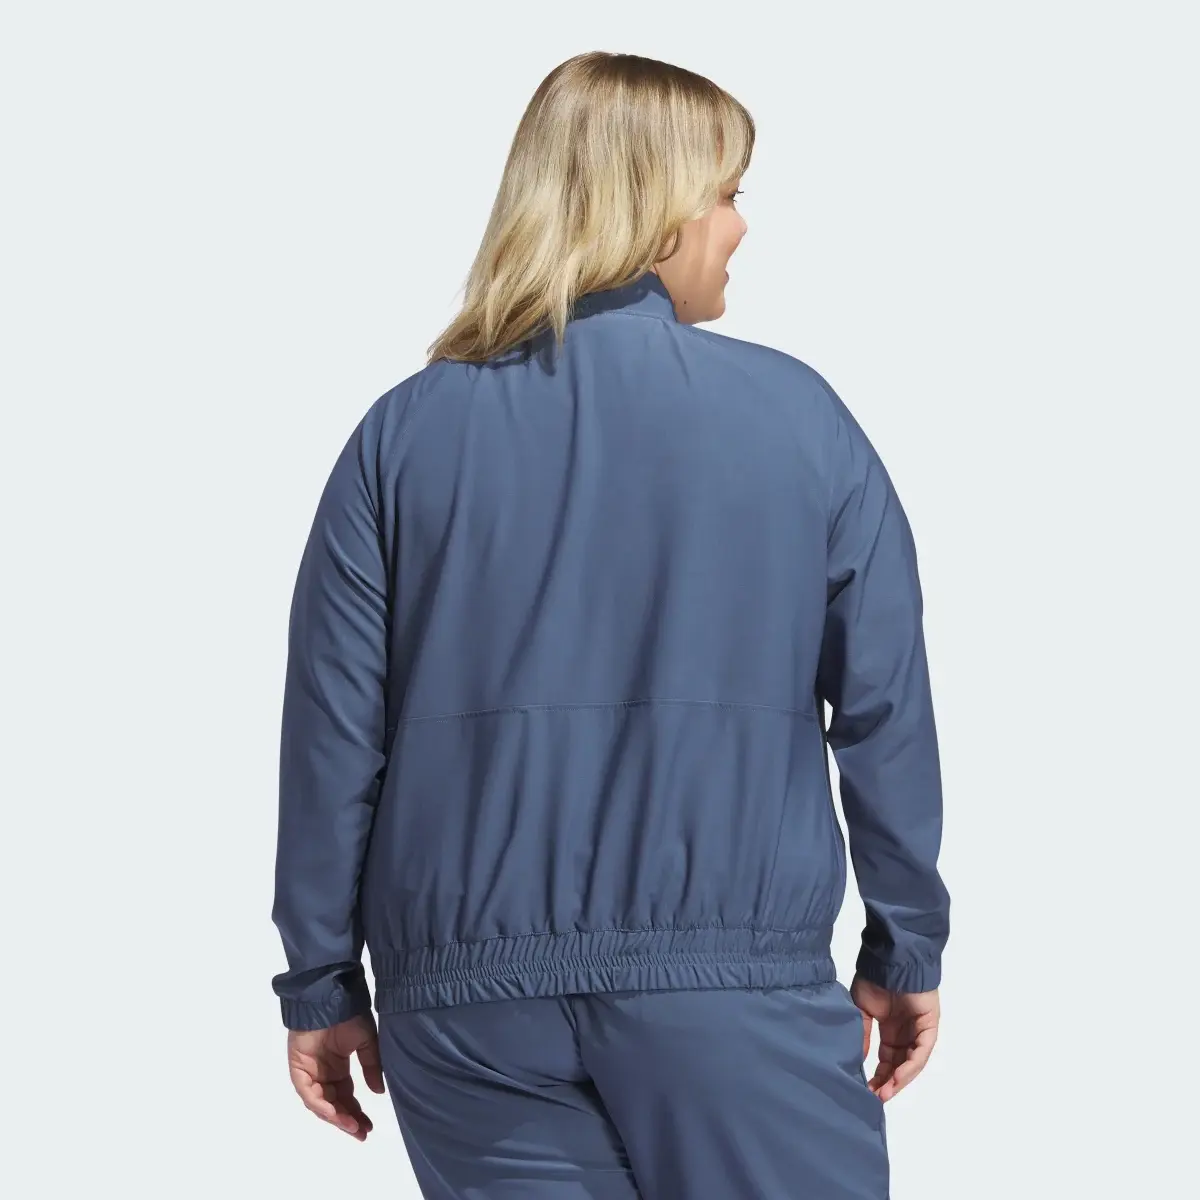 Adidas Women's Ultimate365 Novelty Jacket (Plus Size). 3